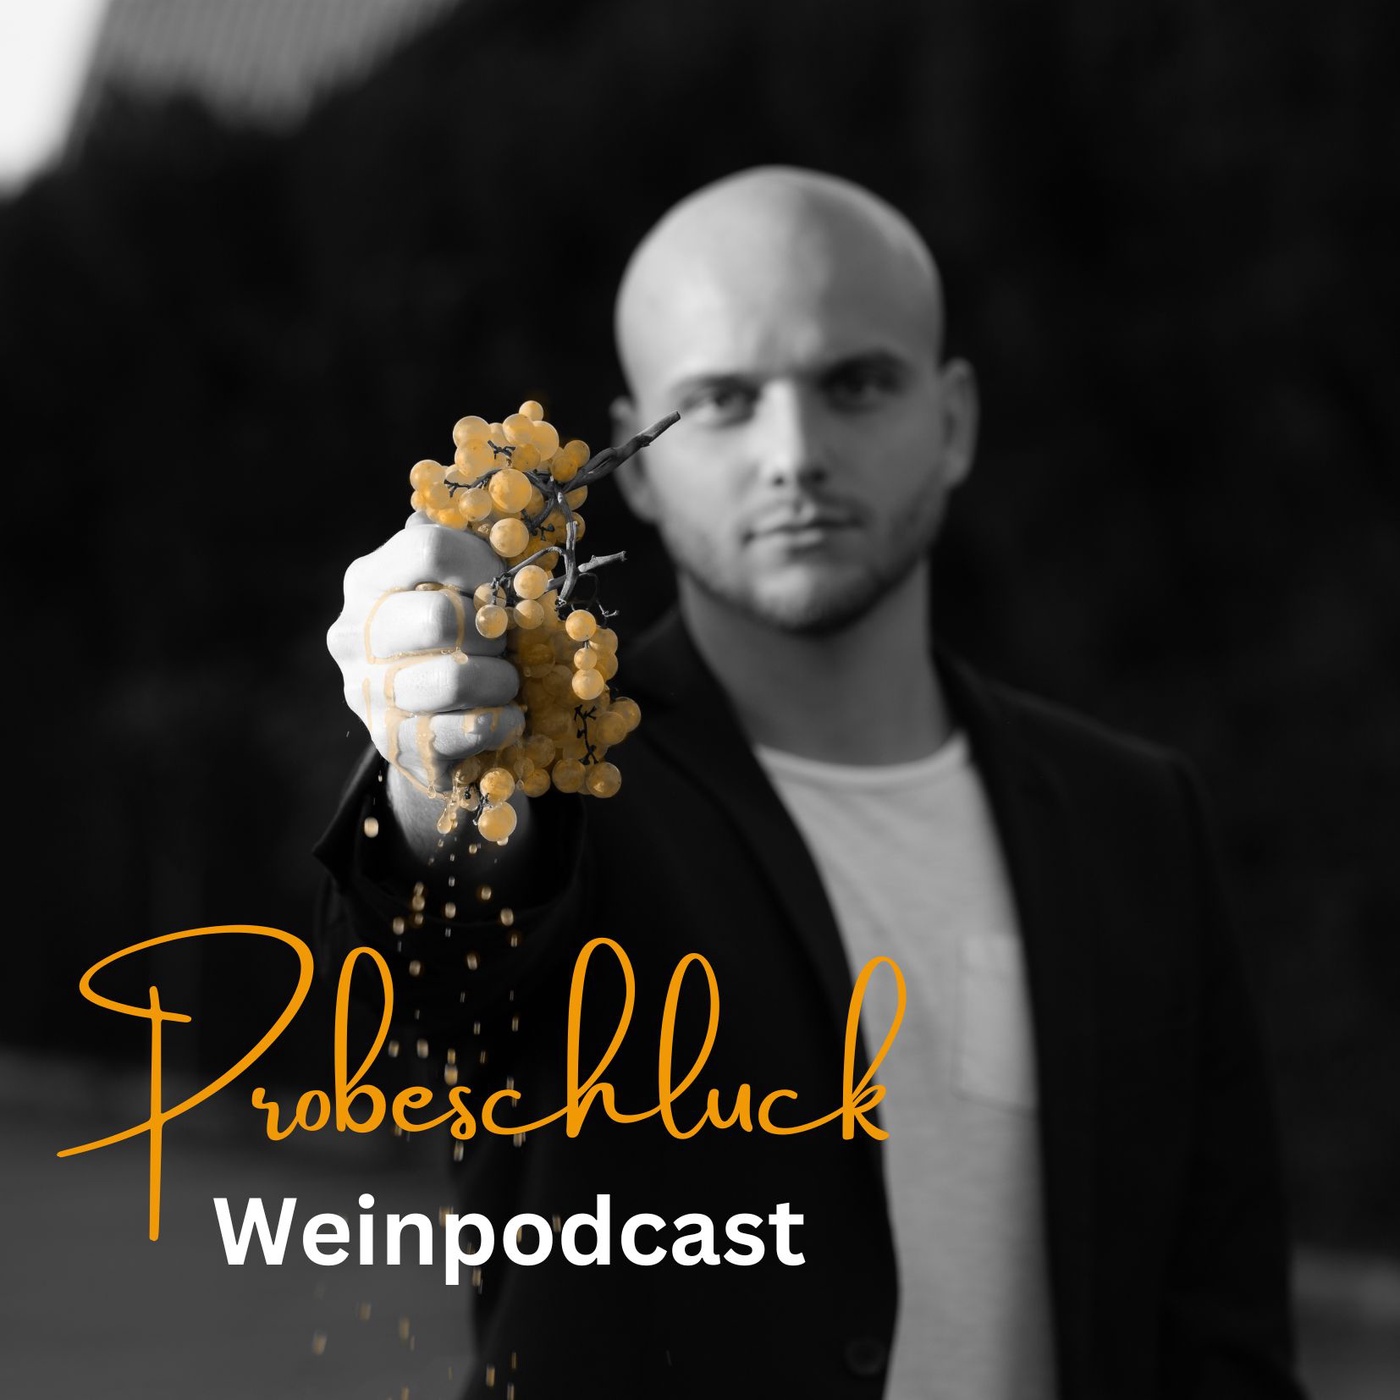 Probeschluck - Weinpodcast